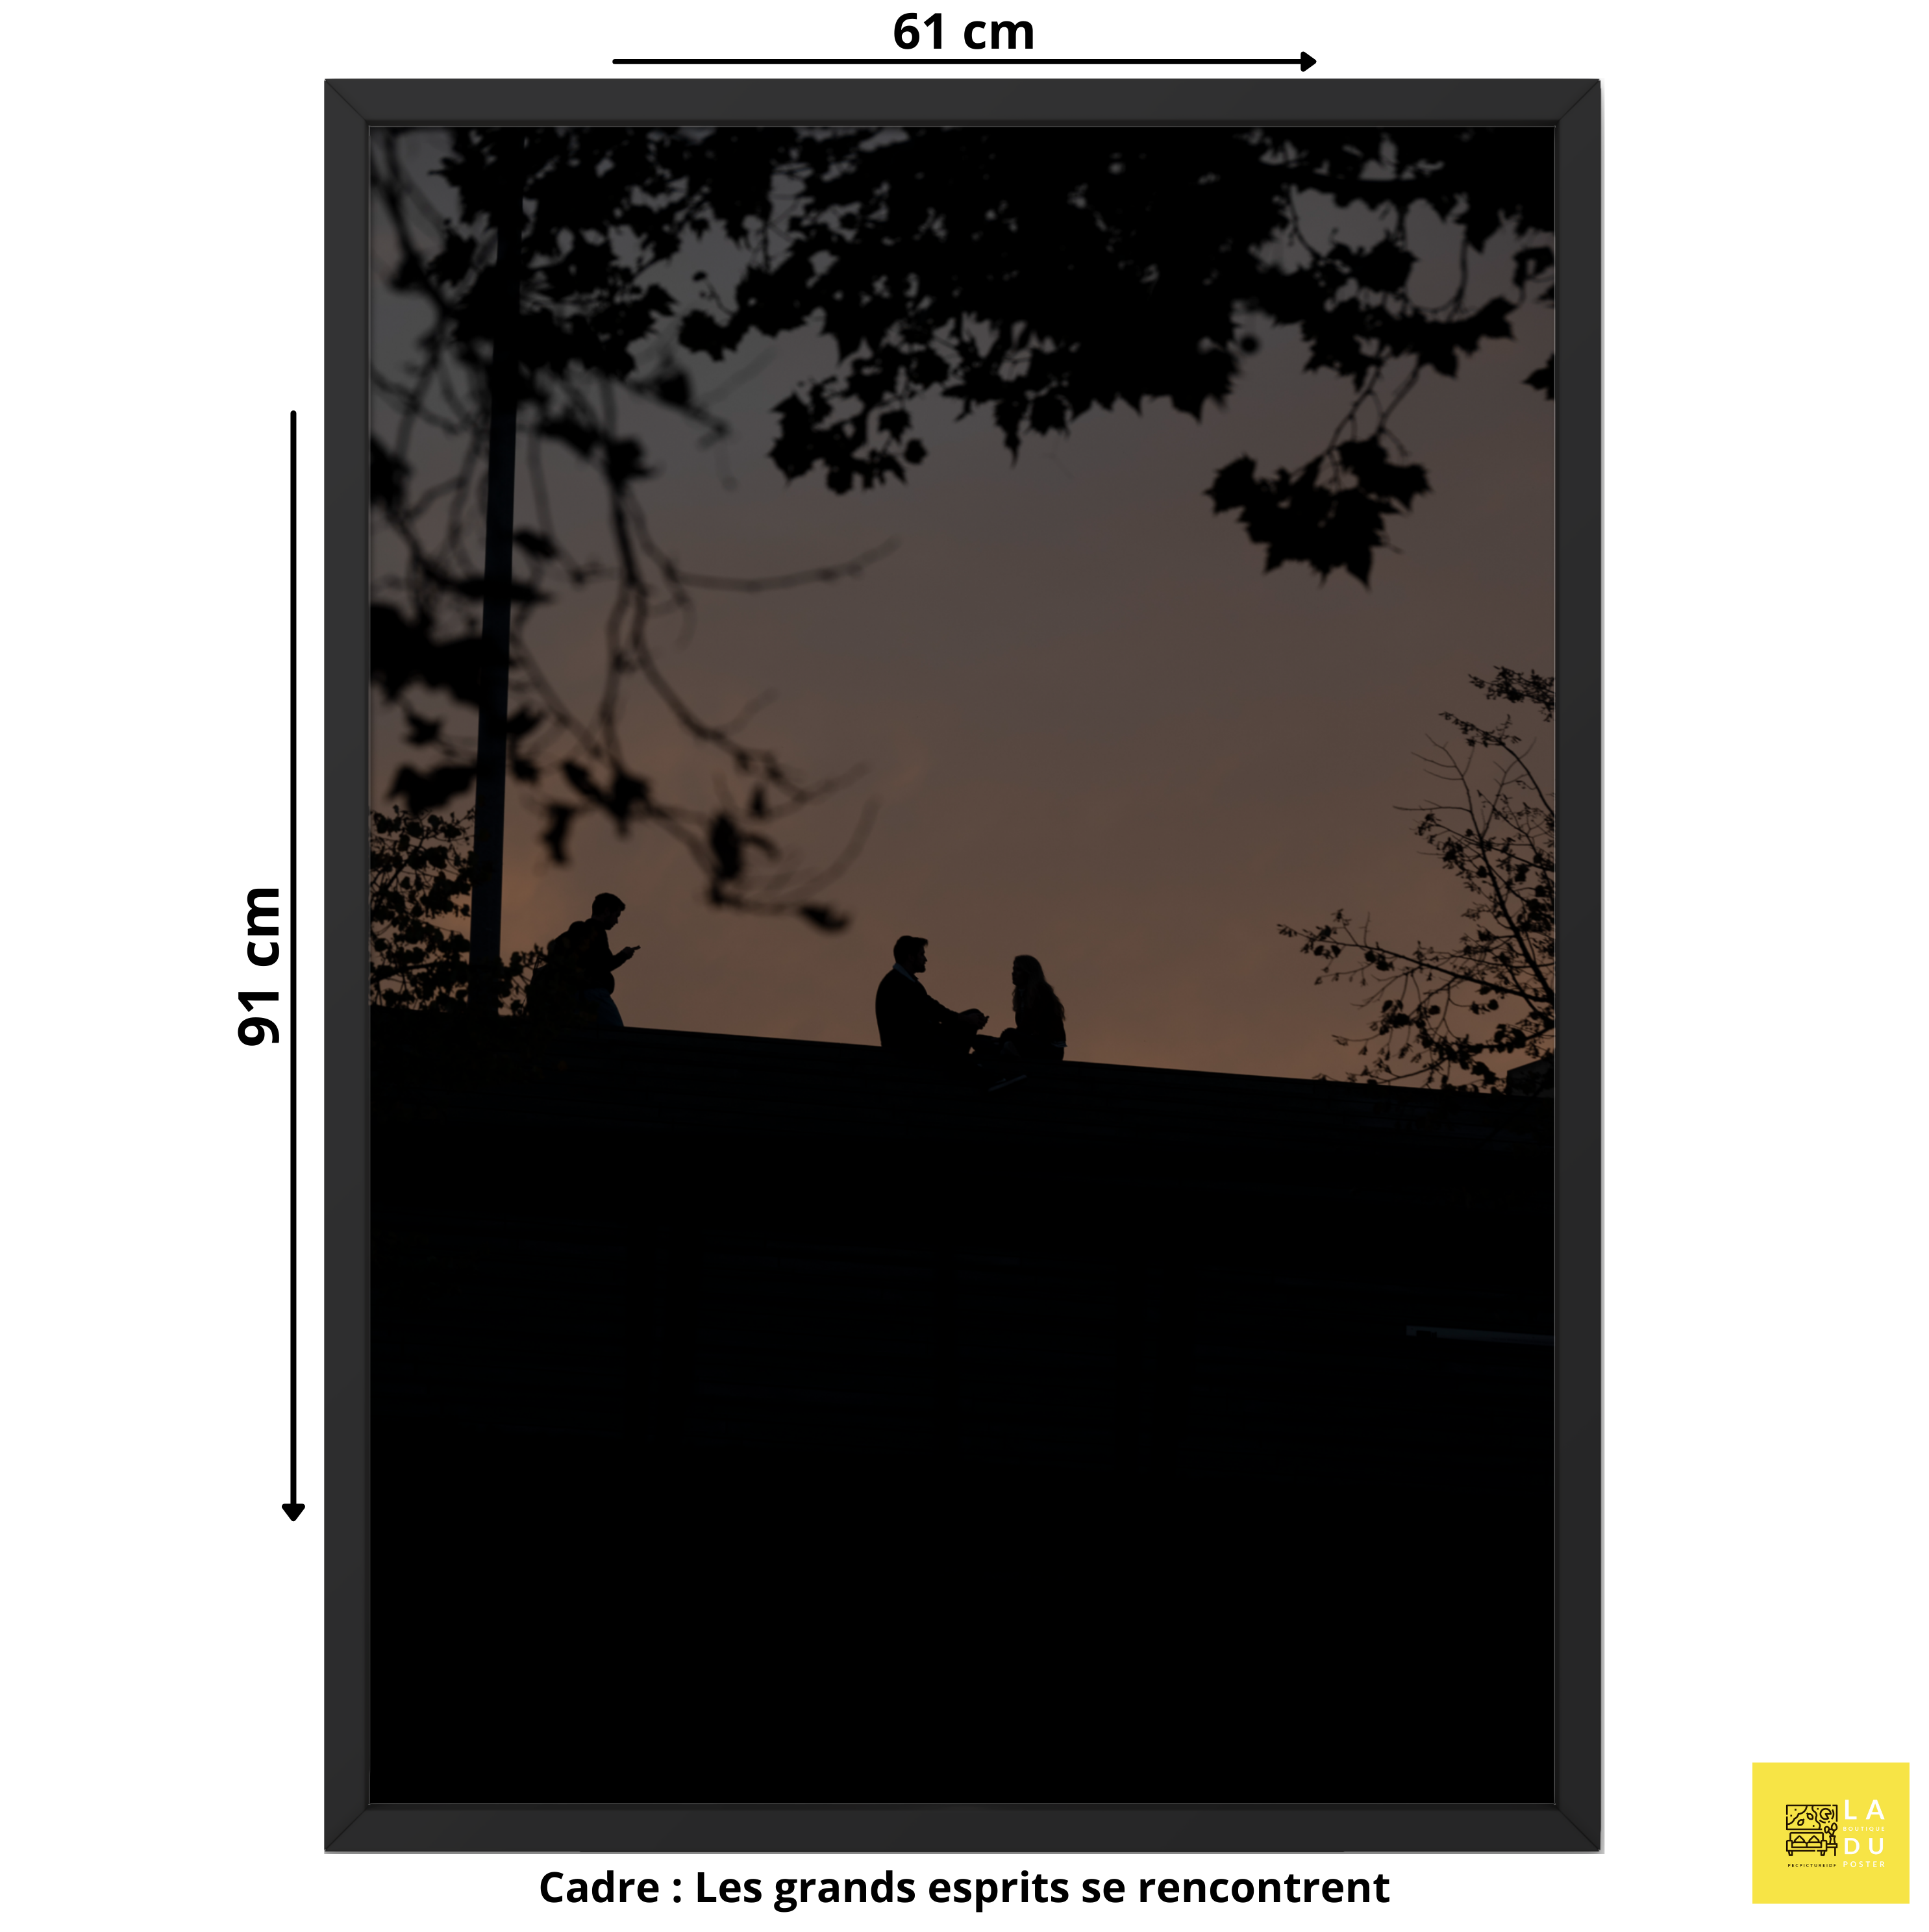 Nuit romantique - Poster encadré - La boutique du poster Français